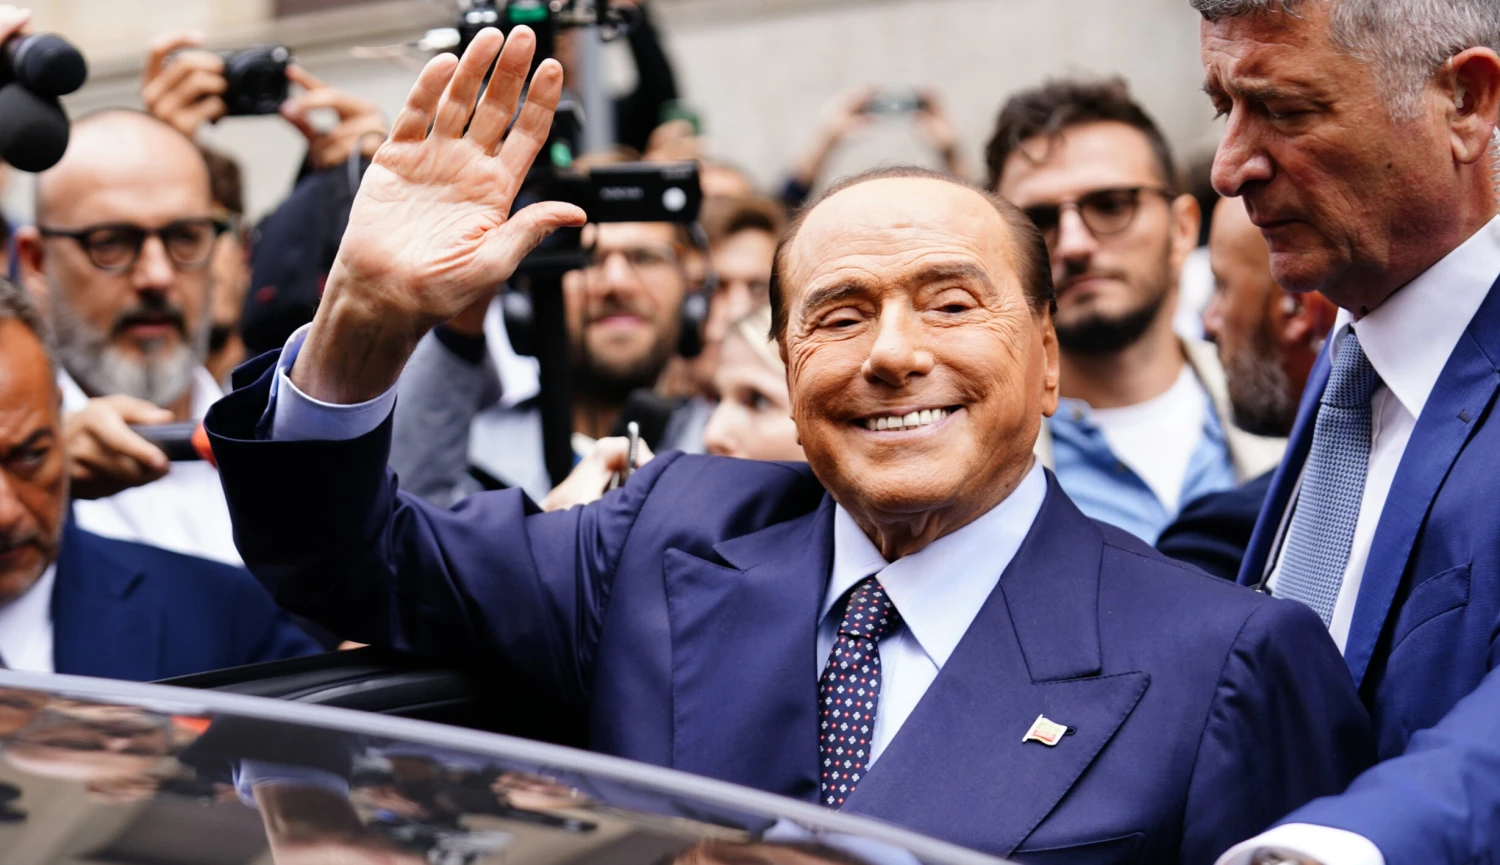 Takhle šel život se Silviem Berlusconim. Kde kontroverzní miliardář k penězům přišel?